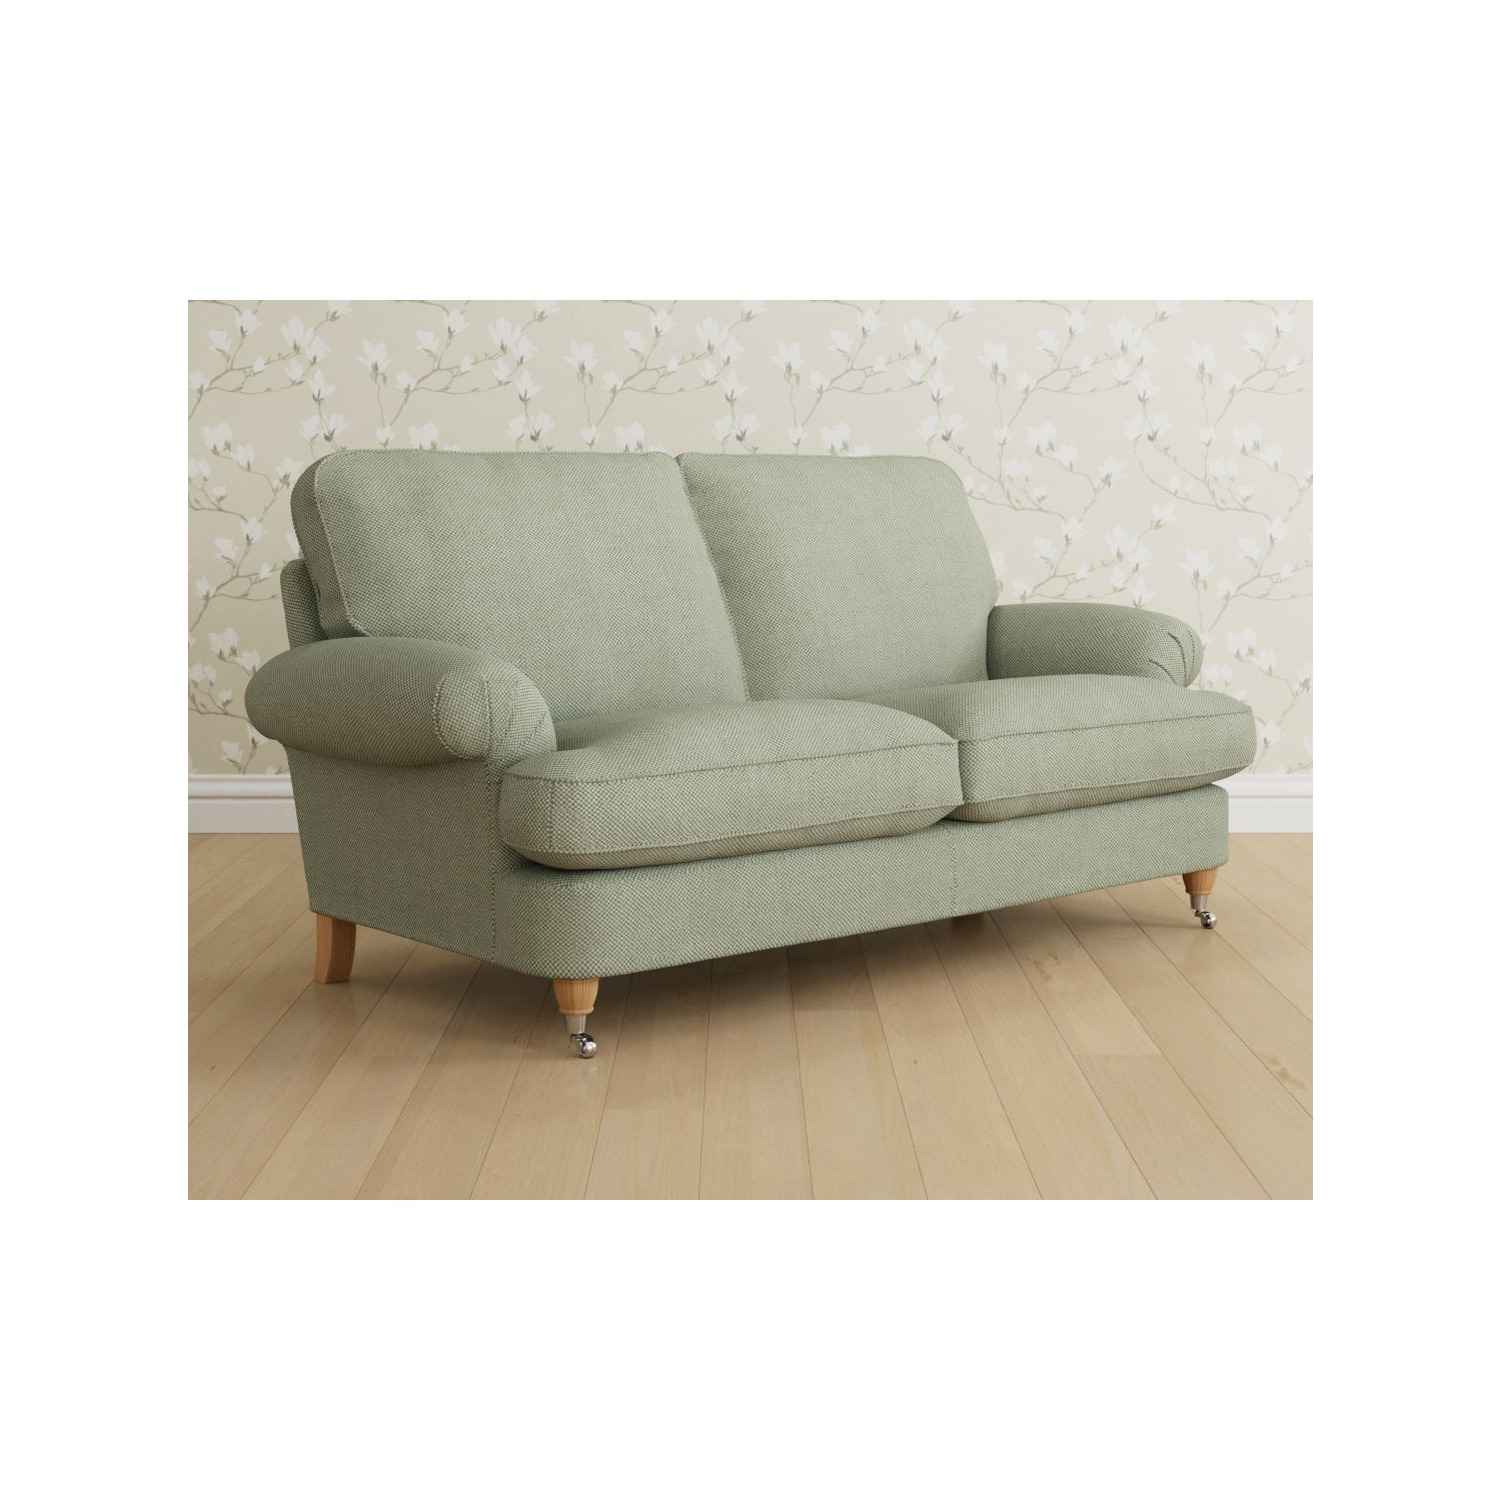 Laura Ashley Beaumaris Medium 2 Seater Sofa, Oak Leg - image 1